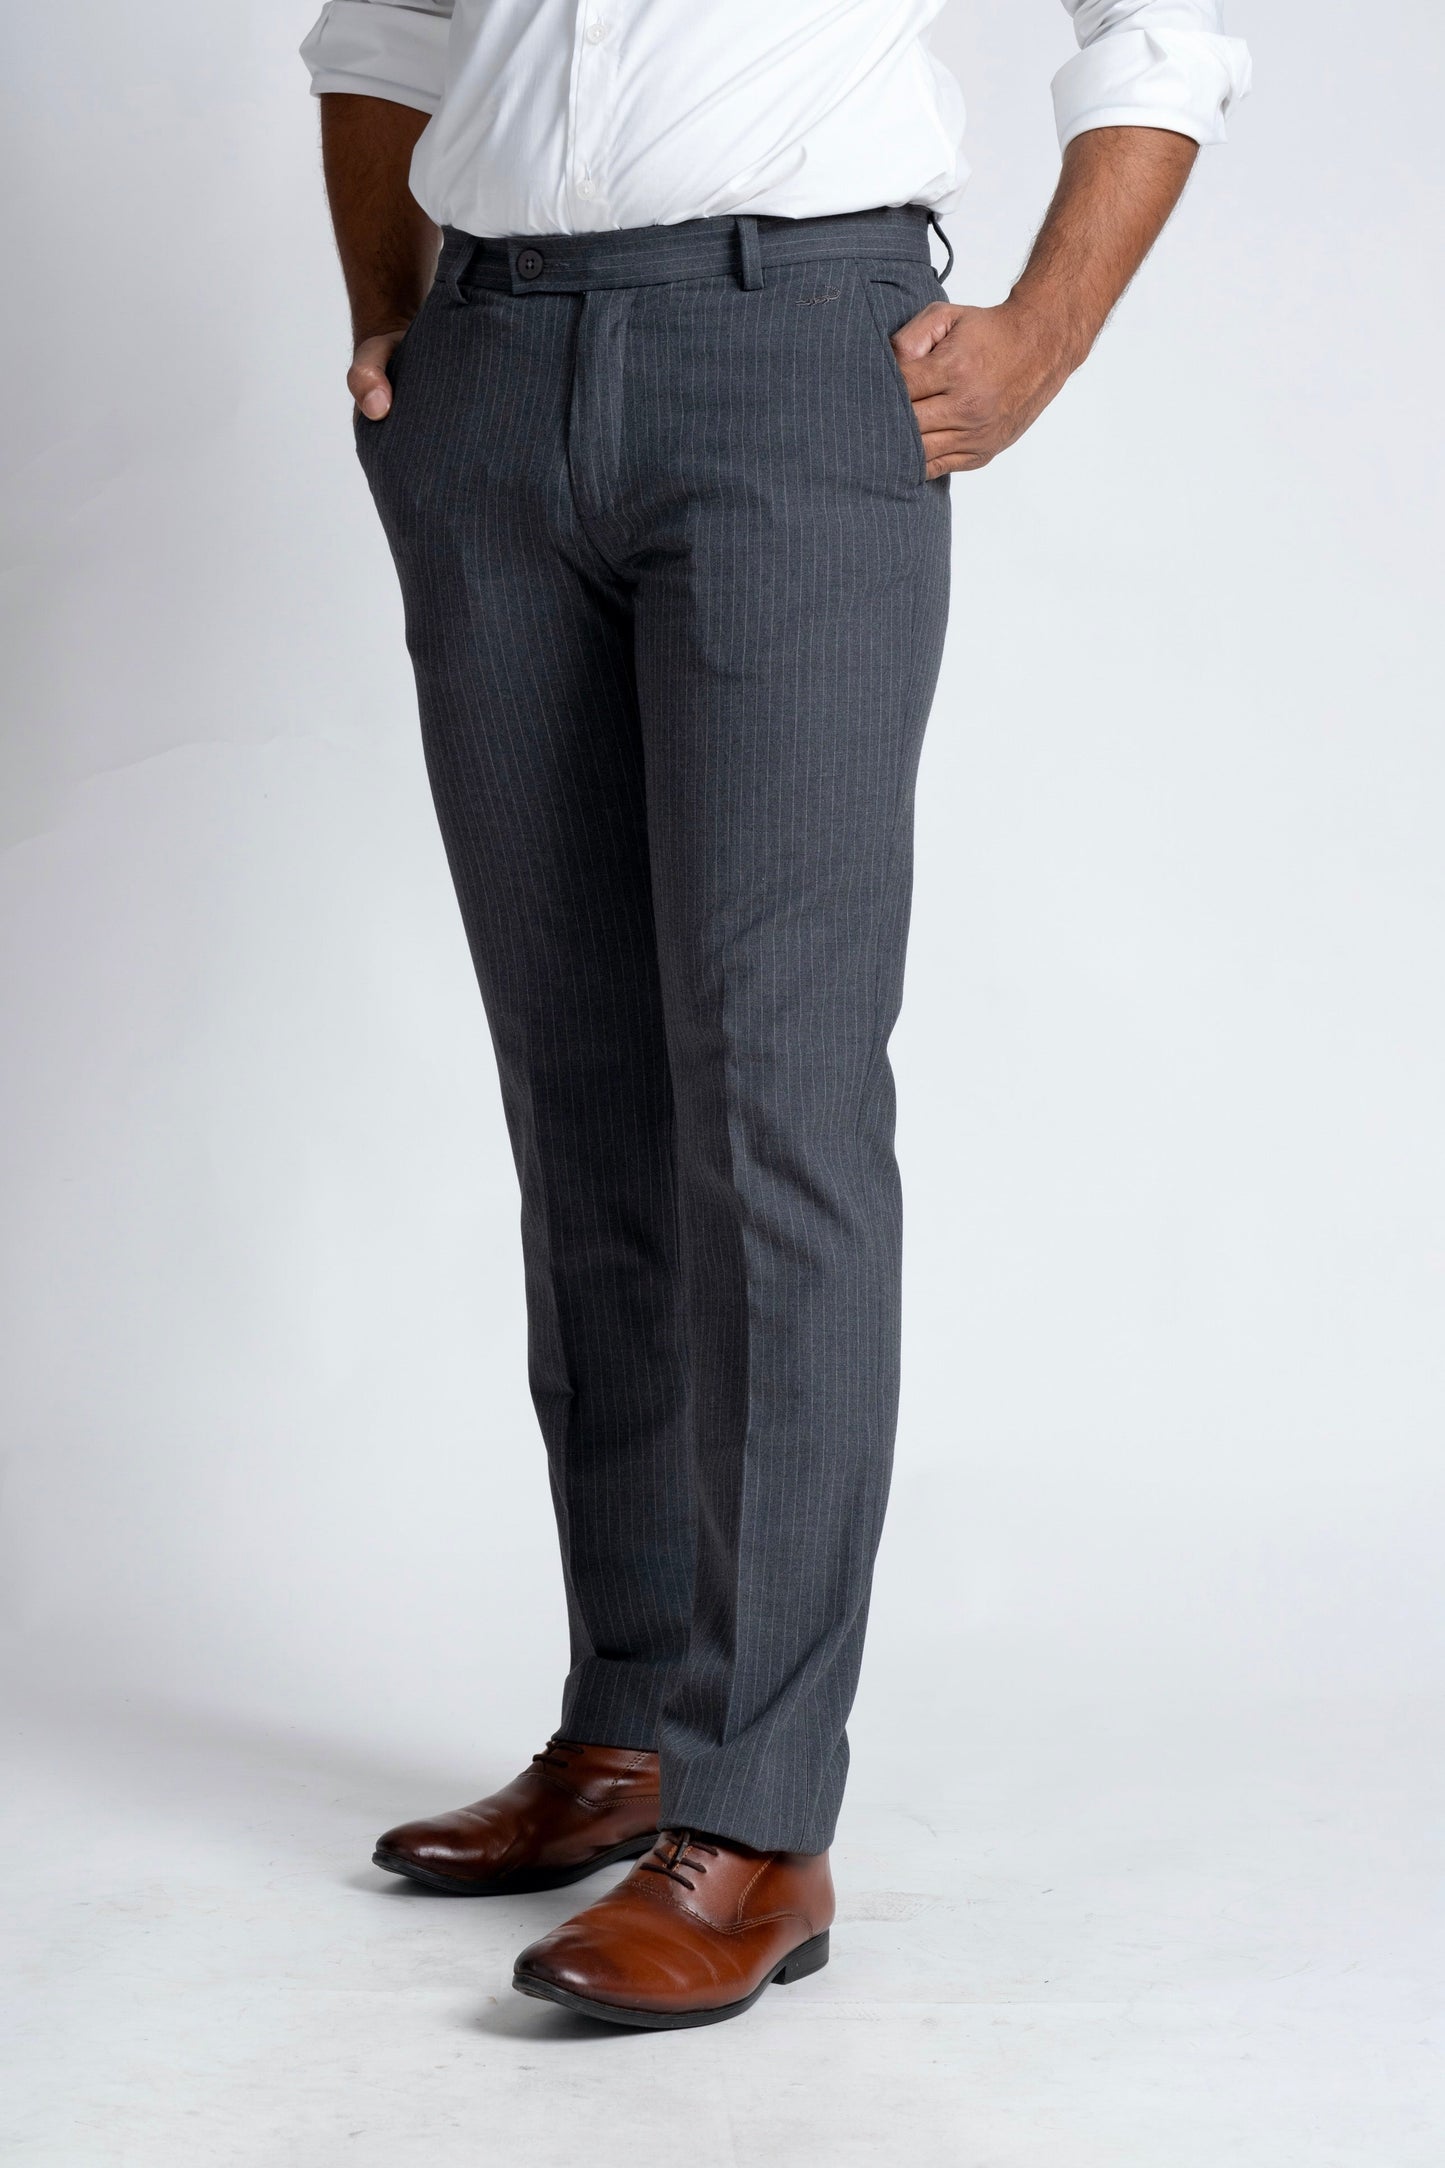 Slim Fit -Formal Trouser - Castor Gray